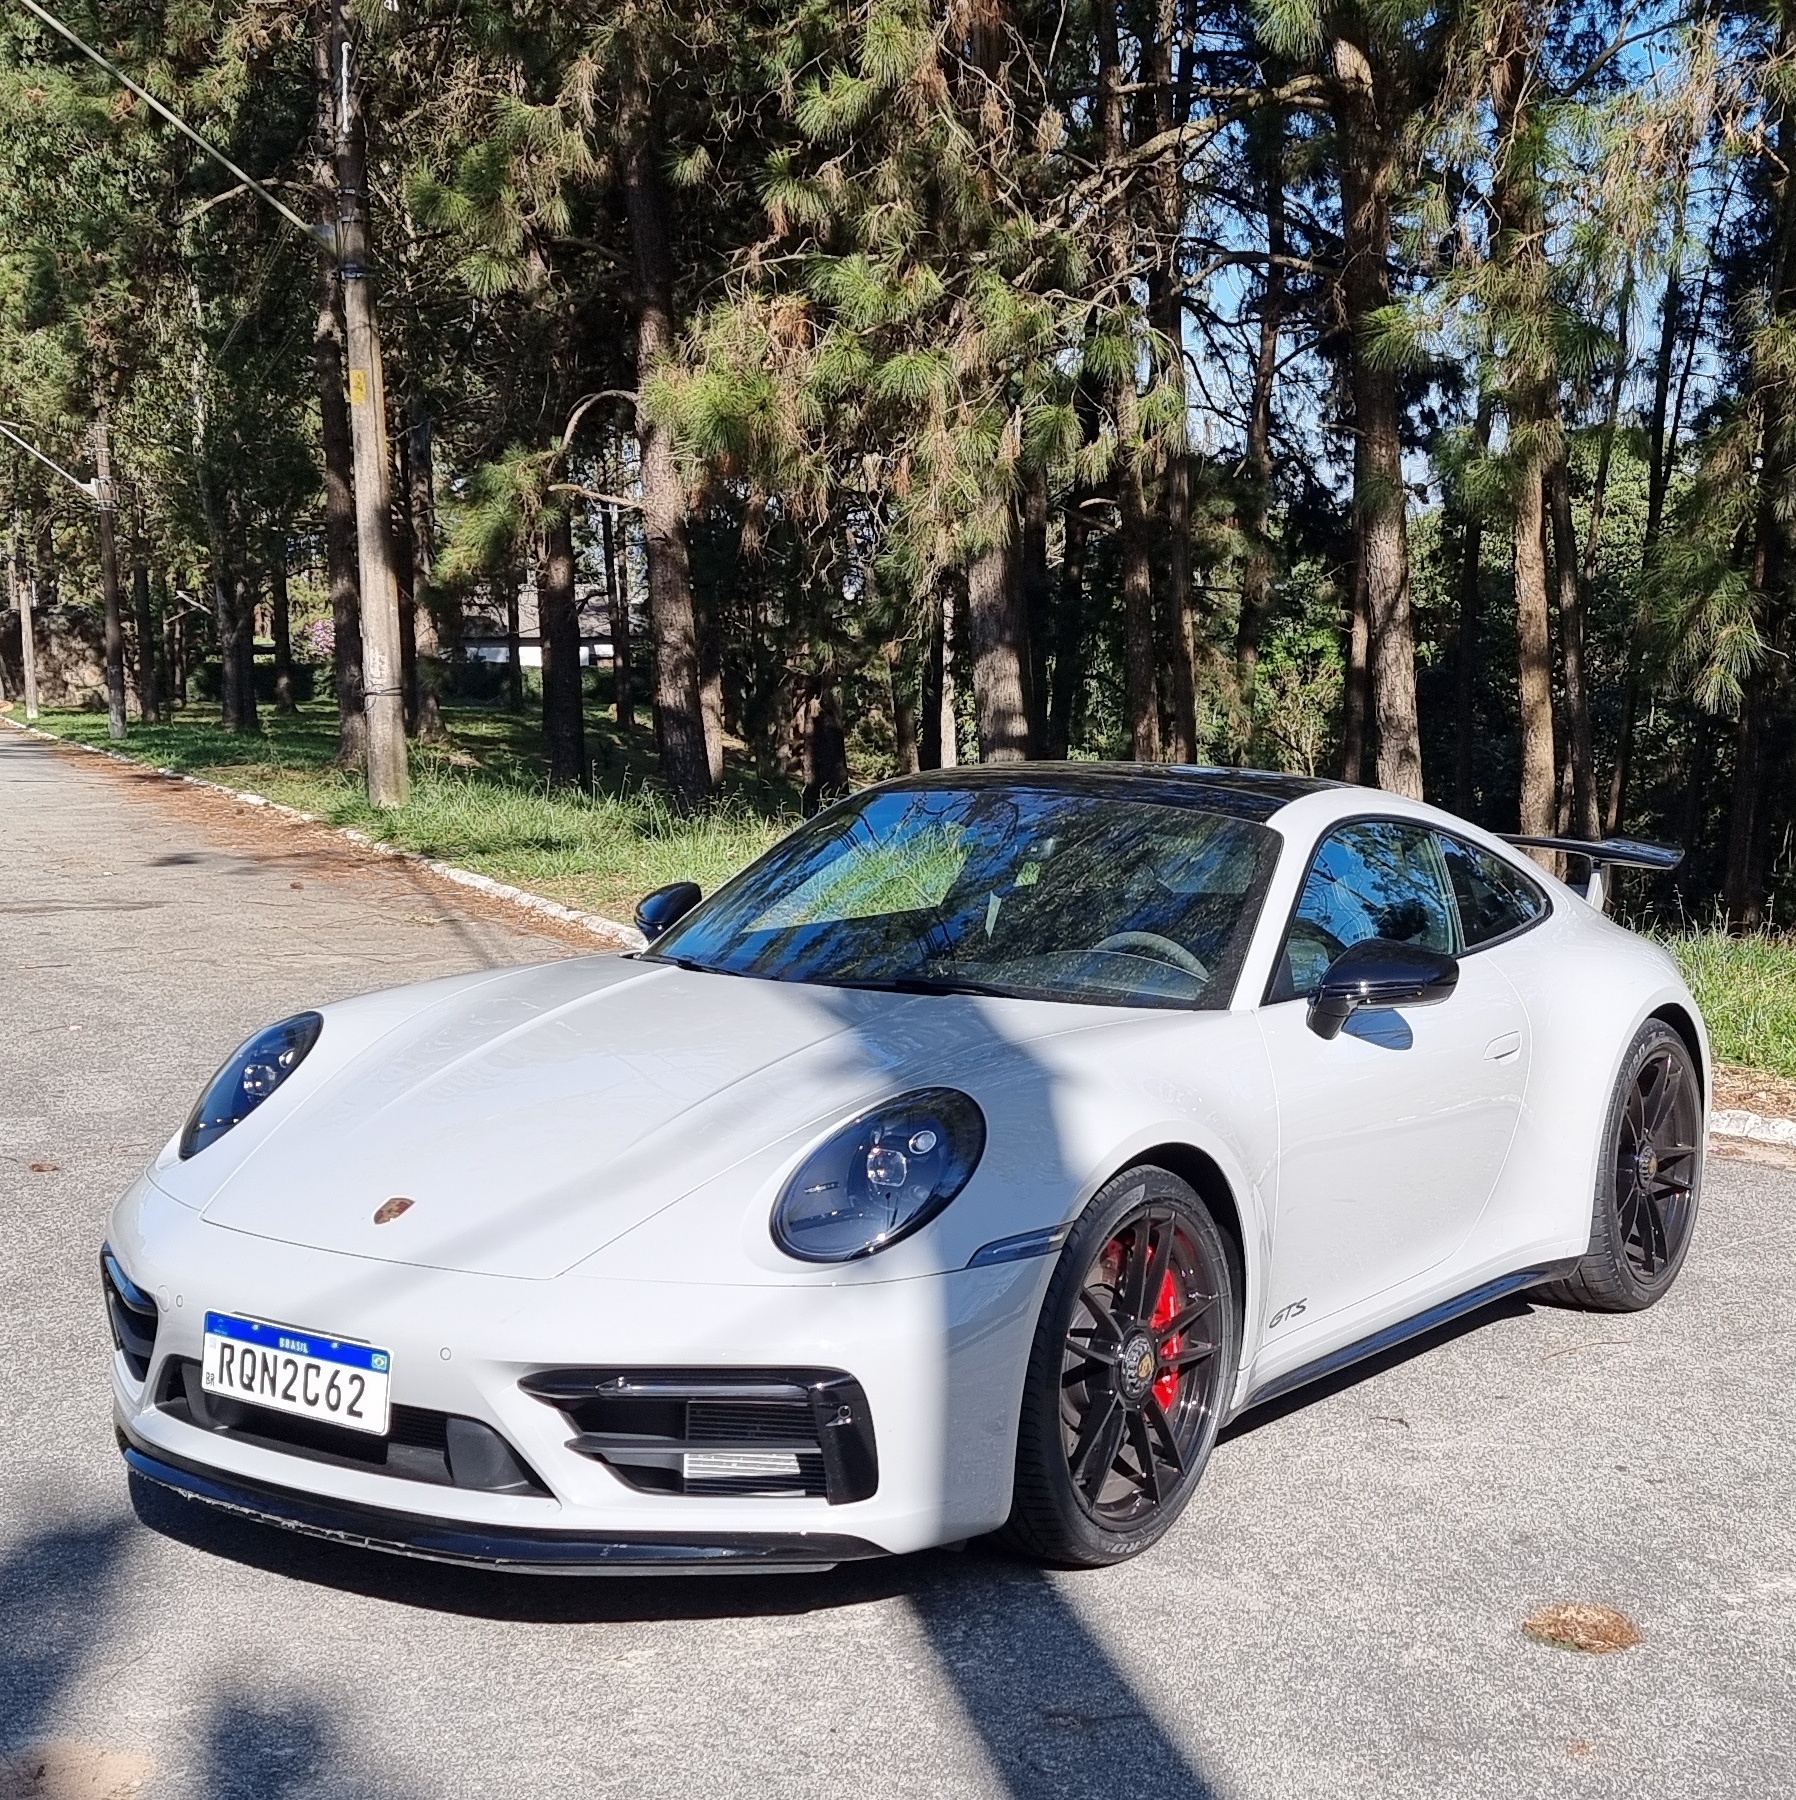 911 GTS é Porsche luxuoso sem perder a alma esportiva da marca